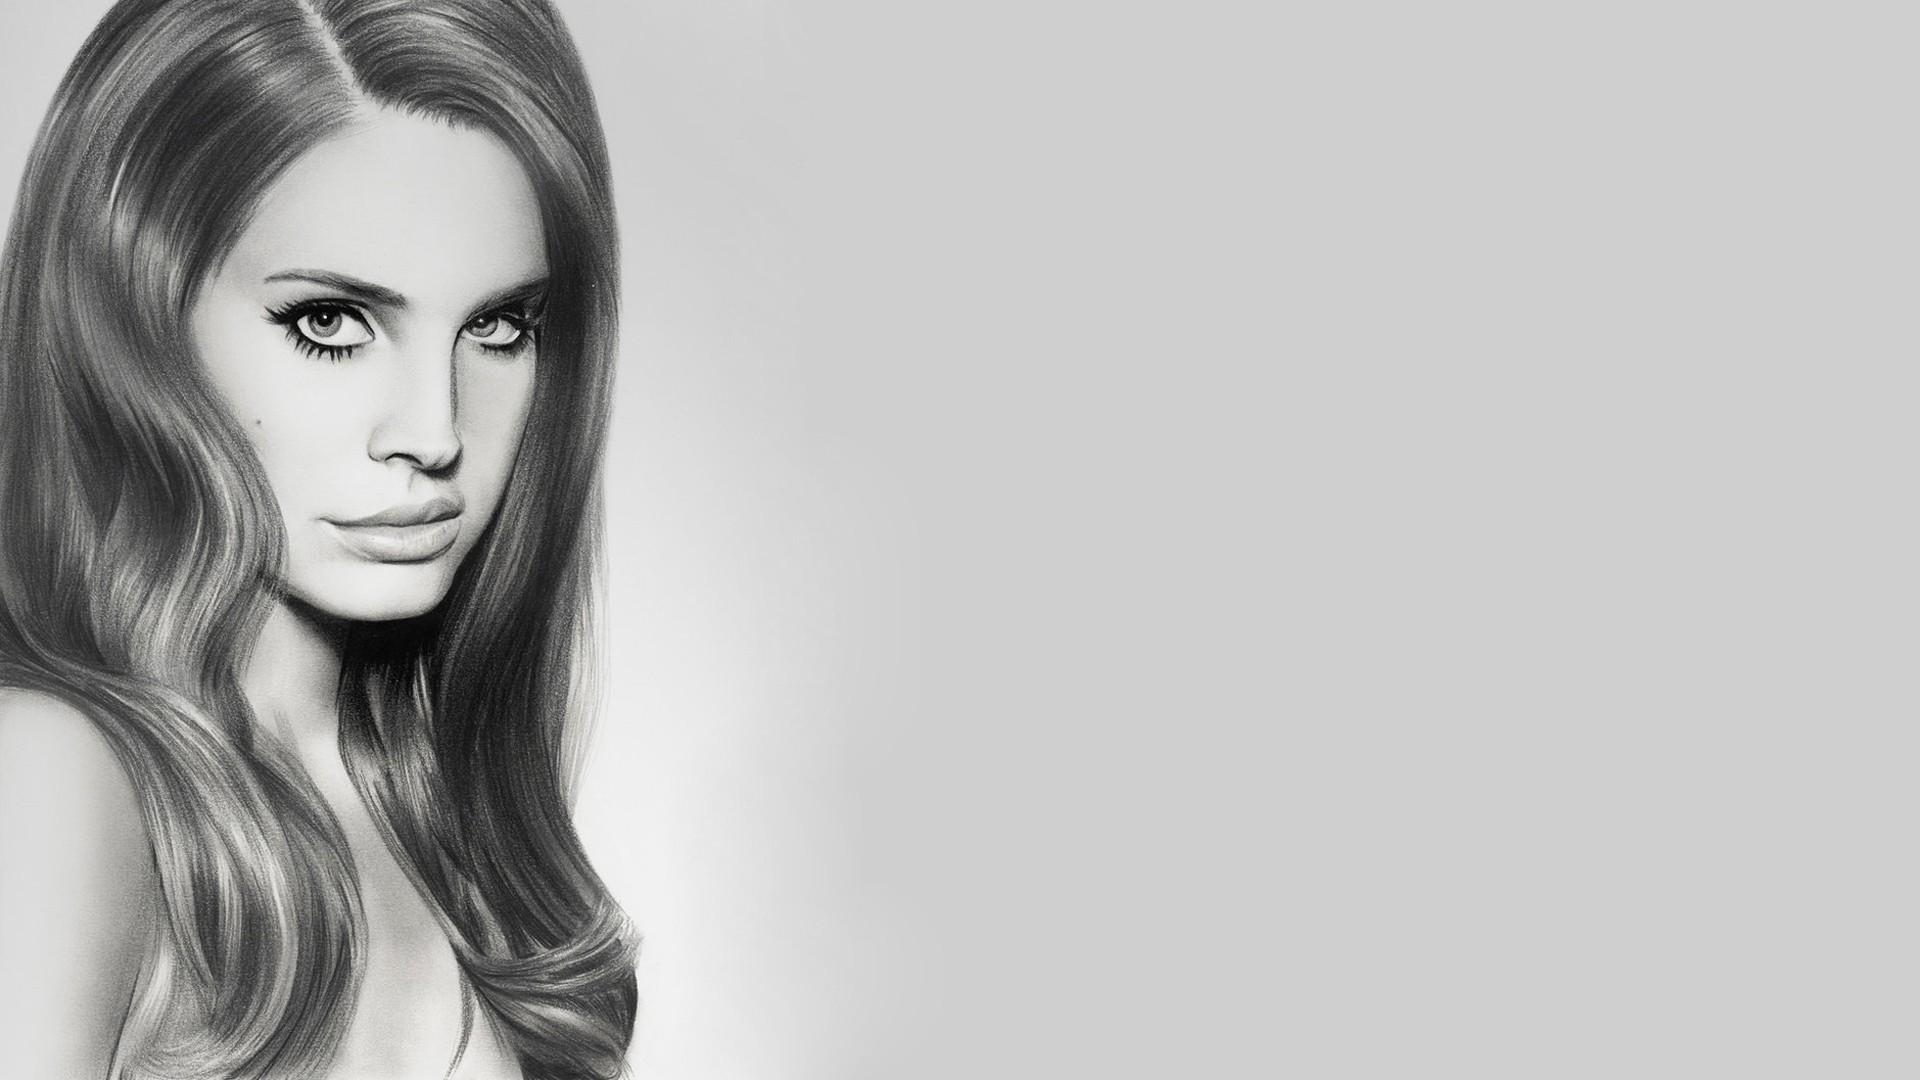 Lana Del Rey Wallpapers Top Free Lana Del Rey Backgrounds 